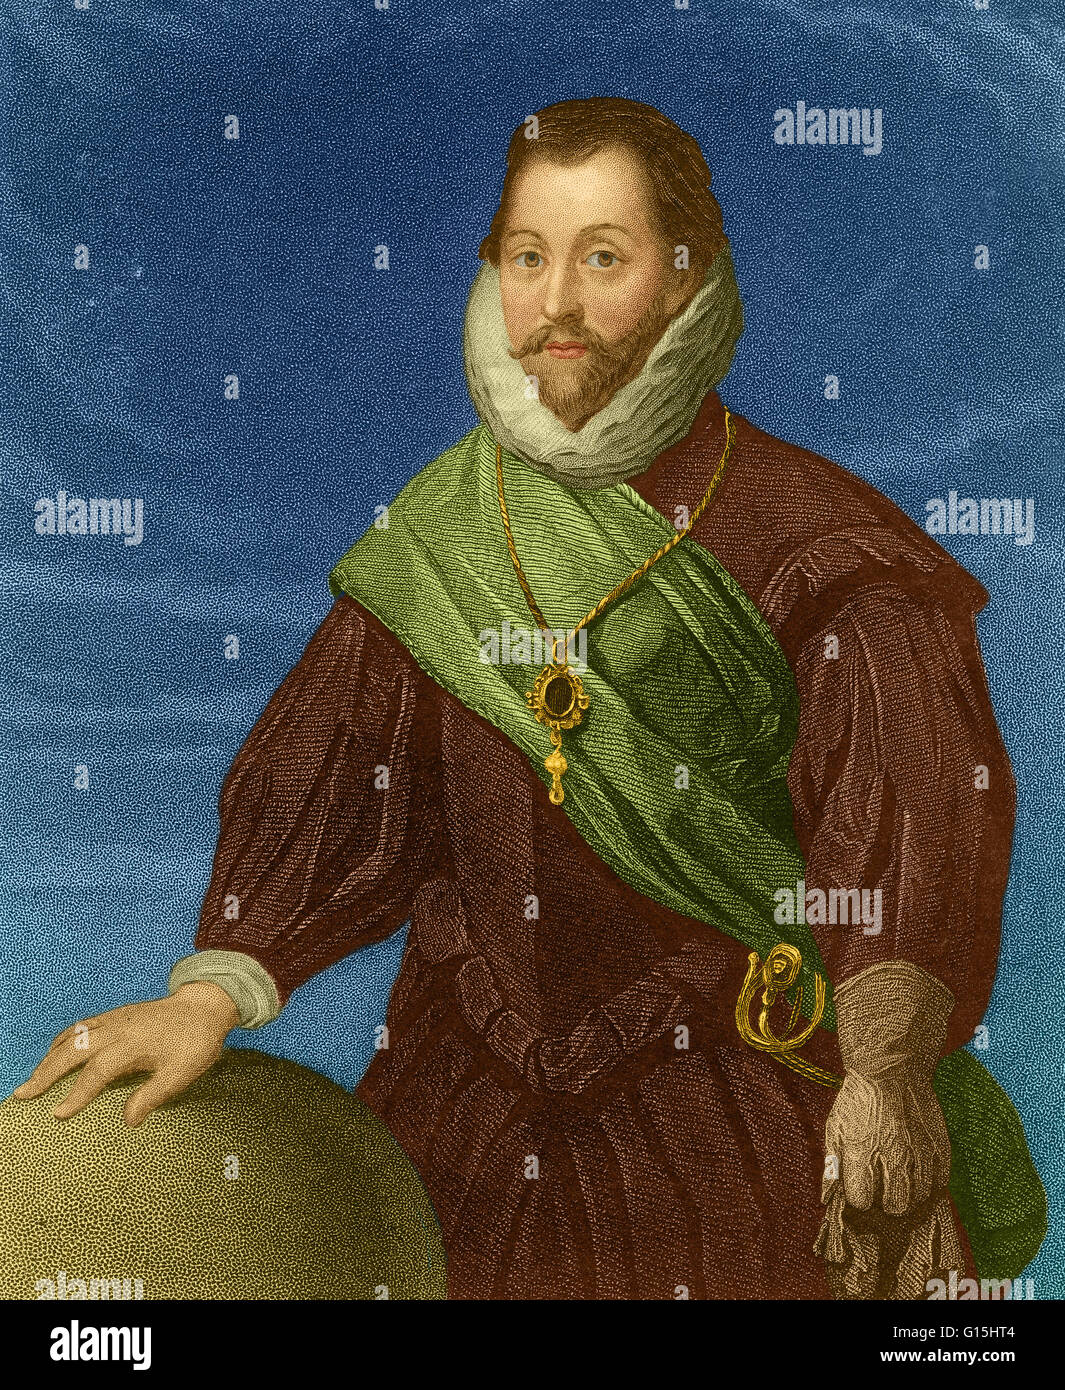 Sir Francis Drake, Vice Ammiraglio (1540-1596) era un inglese un capitano di mare, corsaro, navigator, slave, explorer e politico della Età elisabettiana. Egli è stato il secondo in comando della flotta inglese contro la Armada spagnola nel 1588. Egli ha effettuato la seco Foto Stock